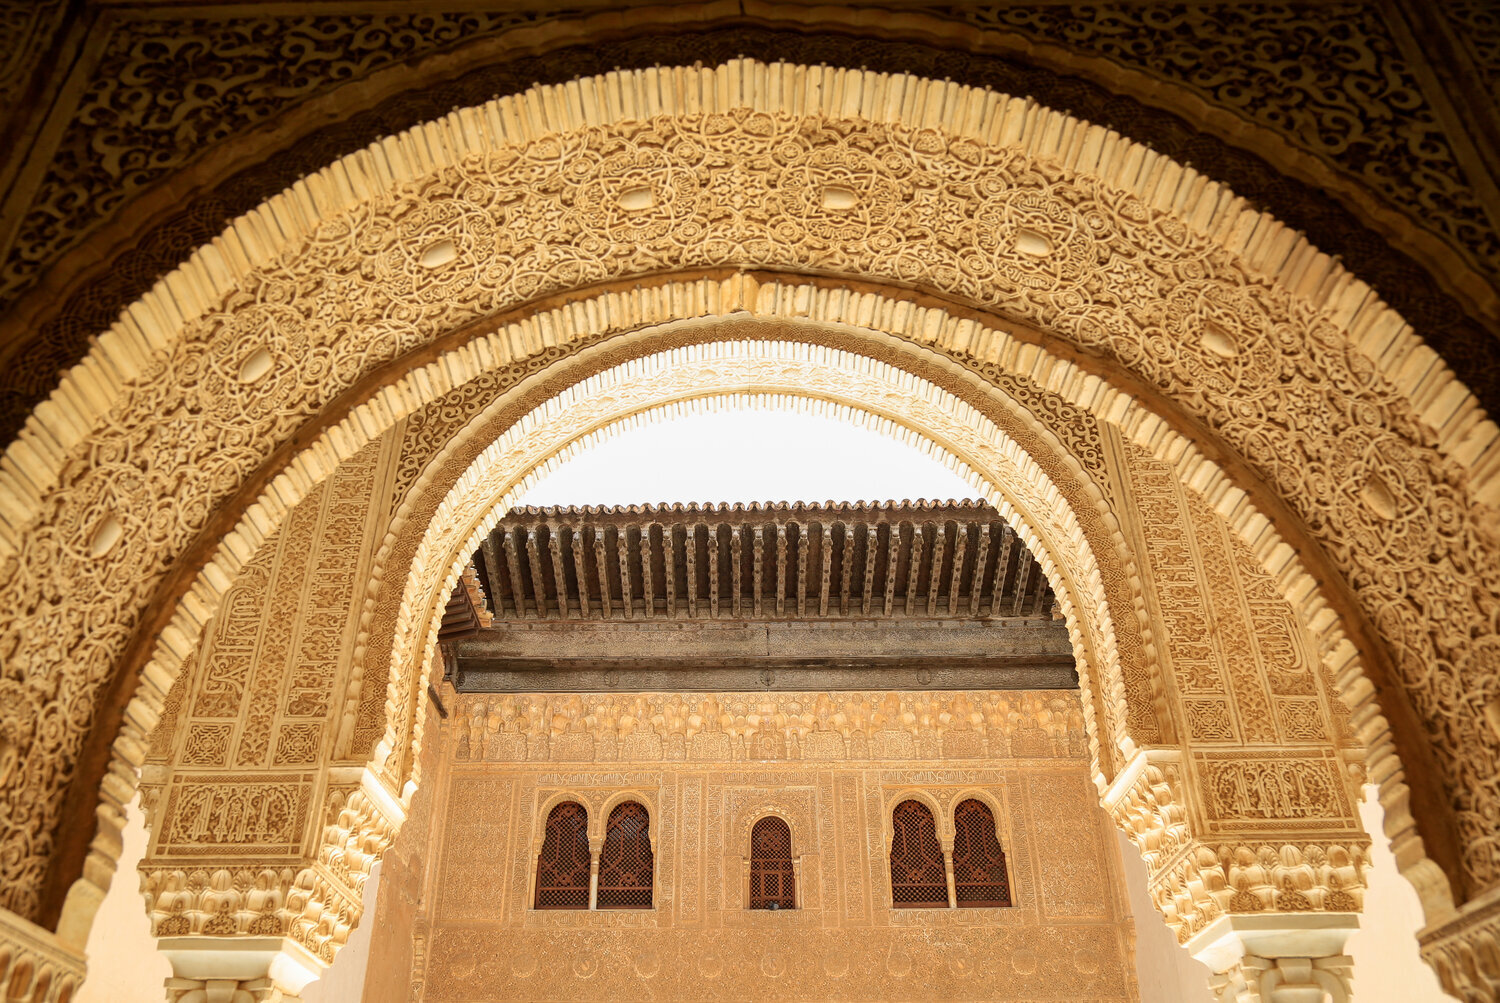 Spain-2015_Alhambra_Interiors-5.jpg